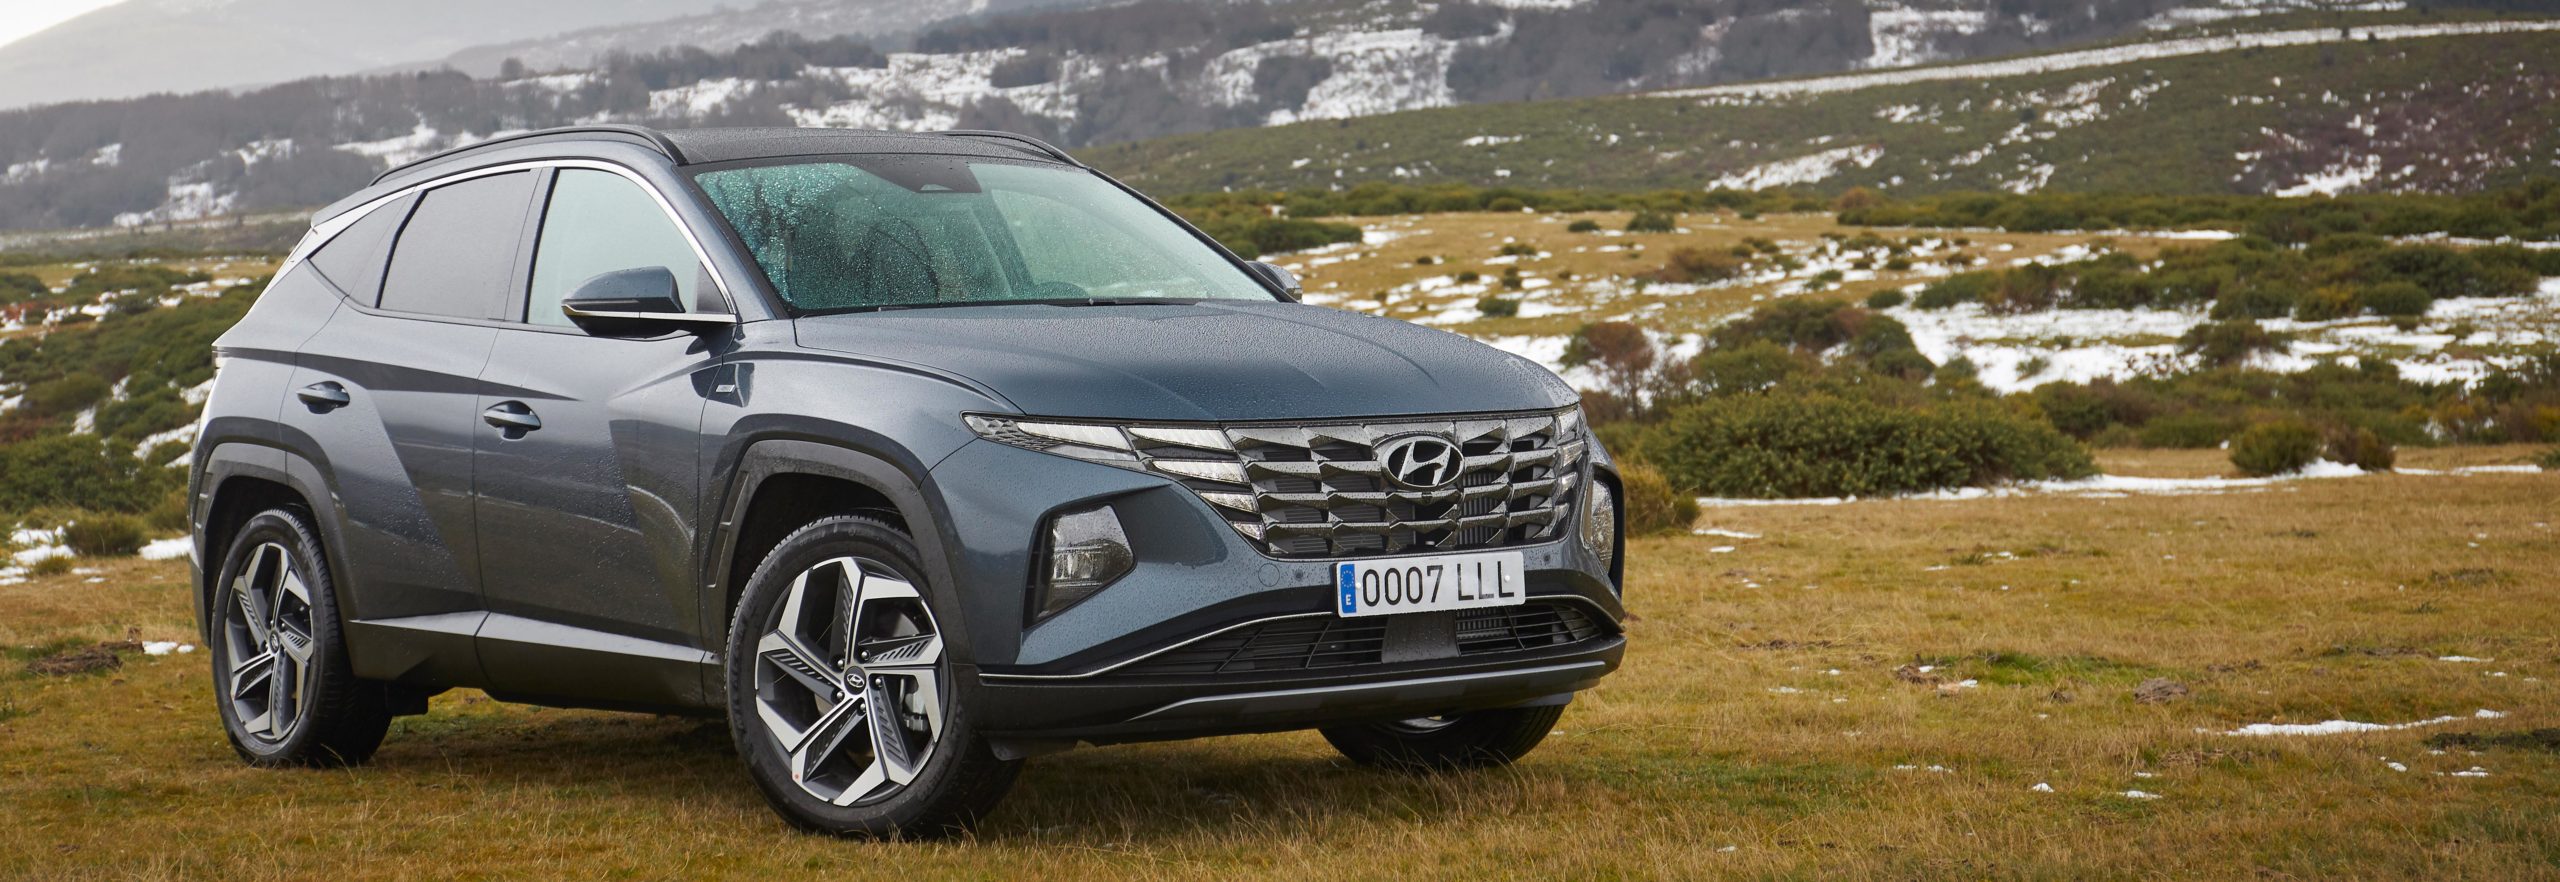 Nuevo Hyundai Tucson Presentación en España